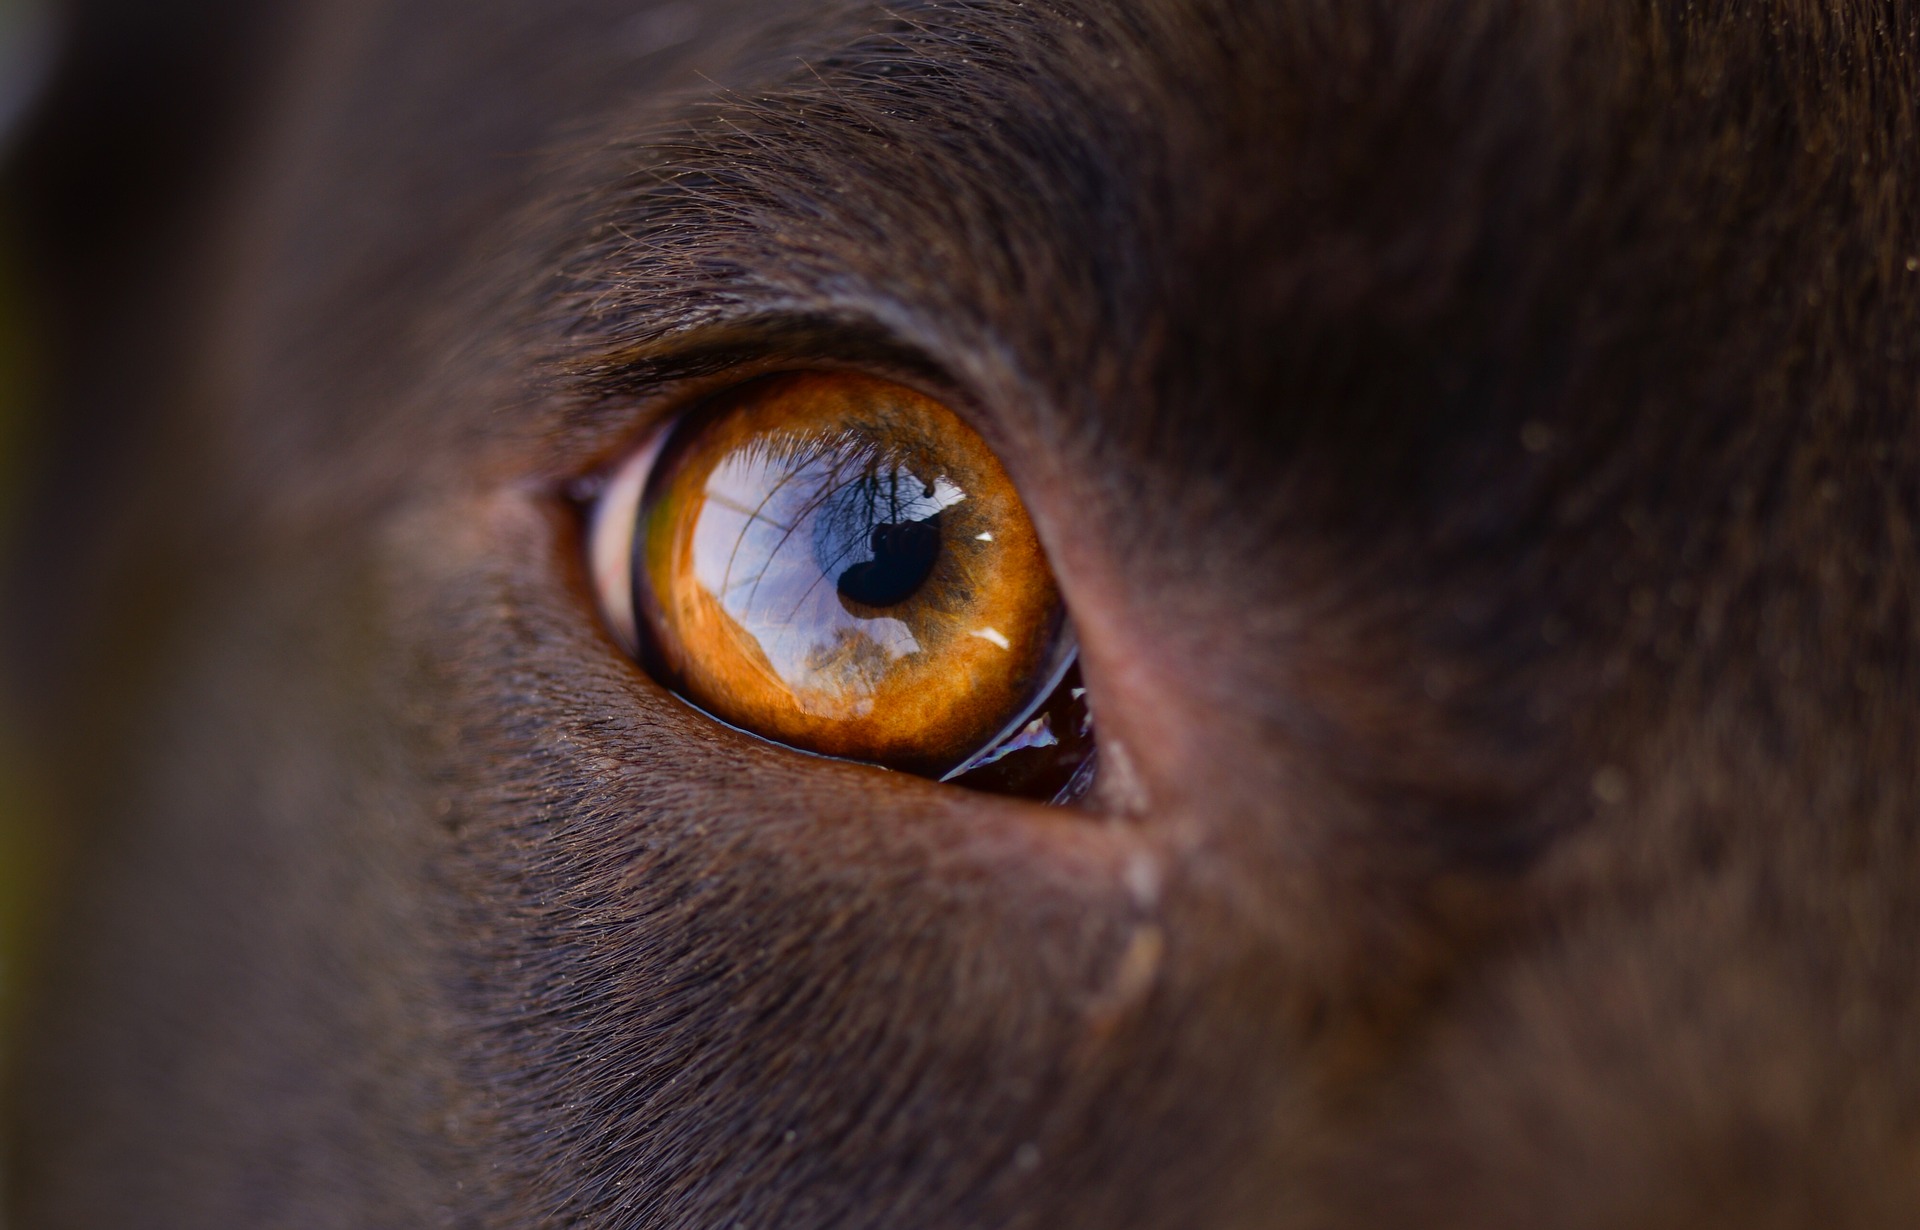 Rohovka oka psa je velmi velká. Velká plocha umožňuje velkou velikost zornice, což usnadňuje vidění v noci a při slabém osvětlení.